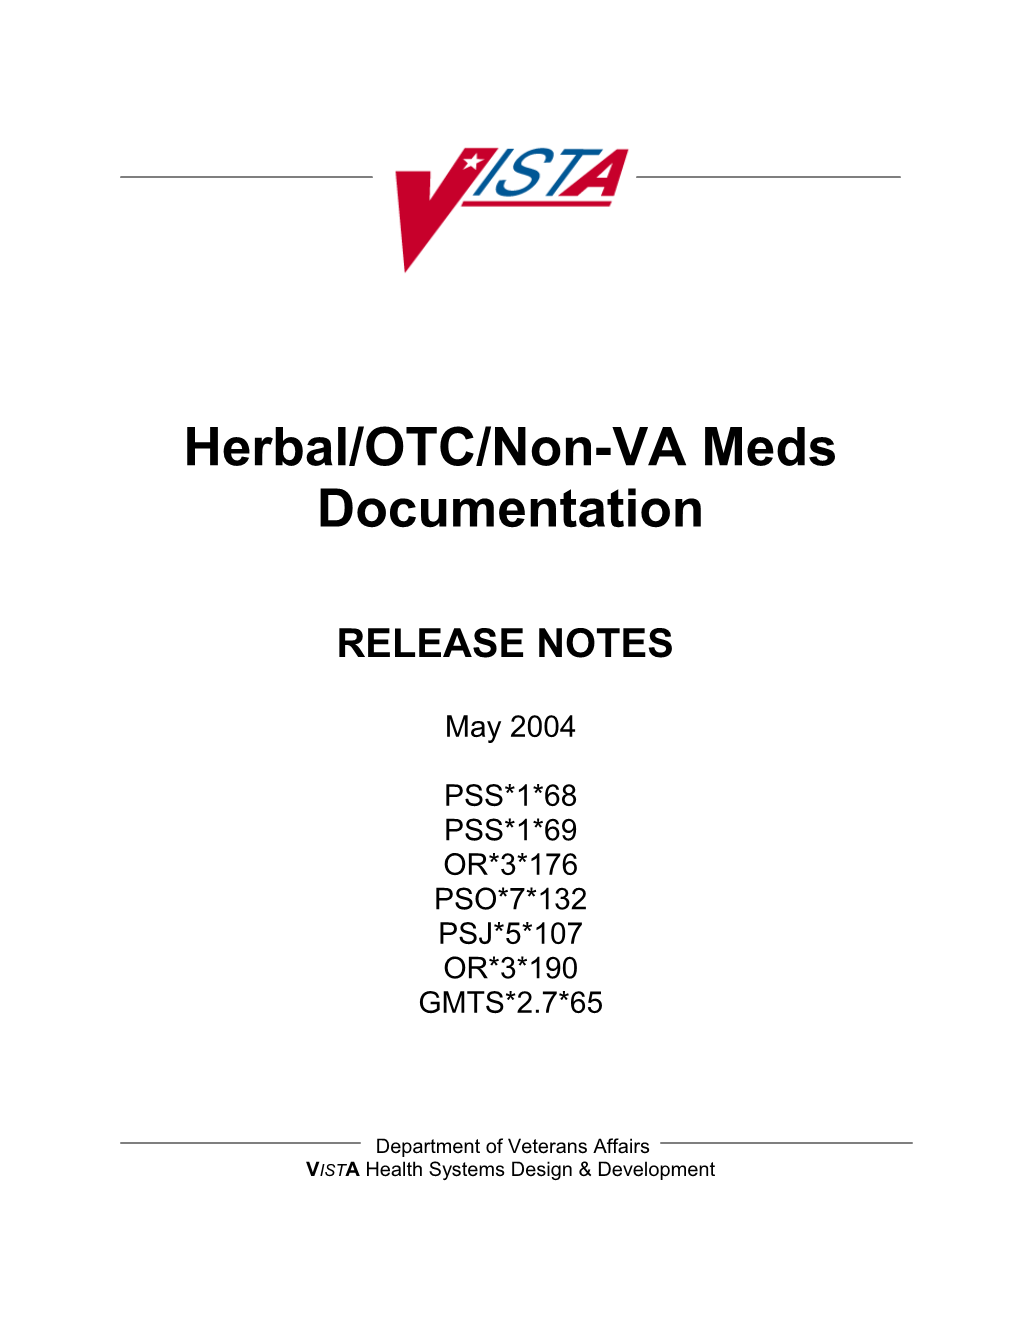 Herbal/OTC/Non-VA Meds Documentation